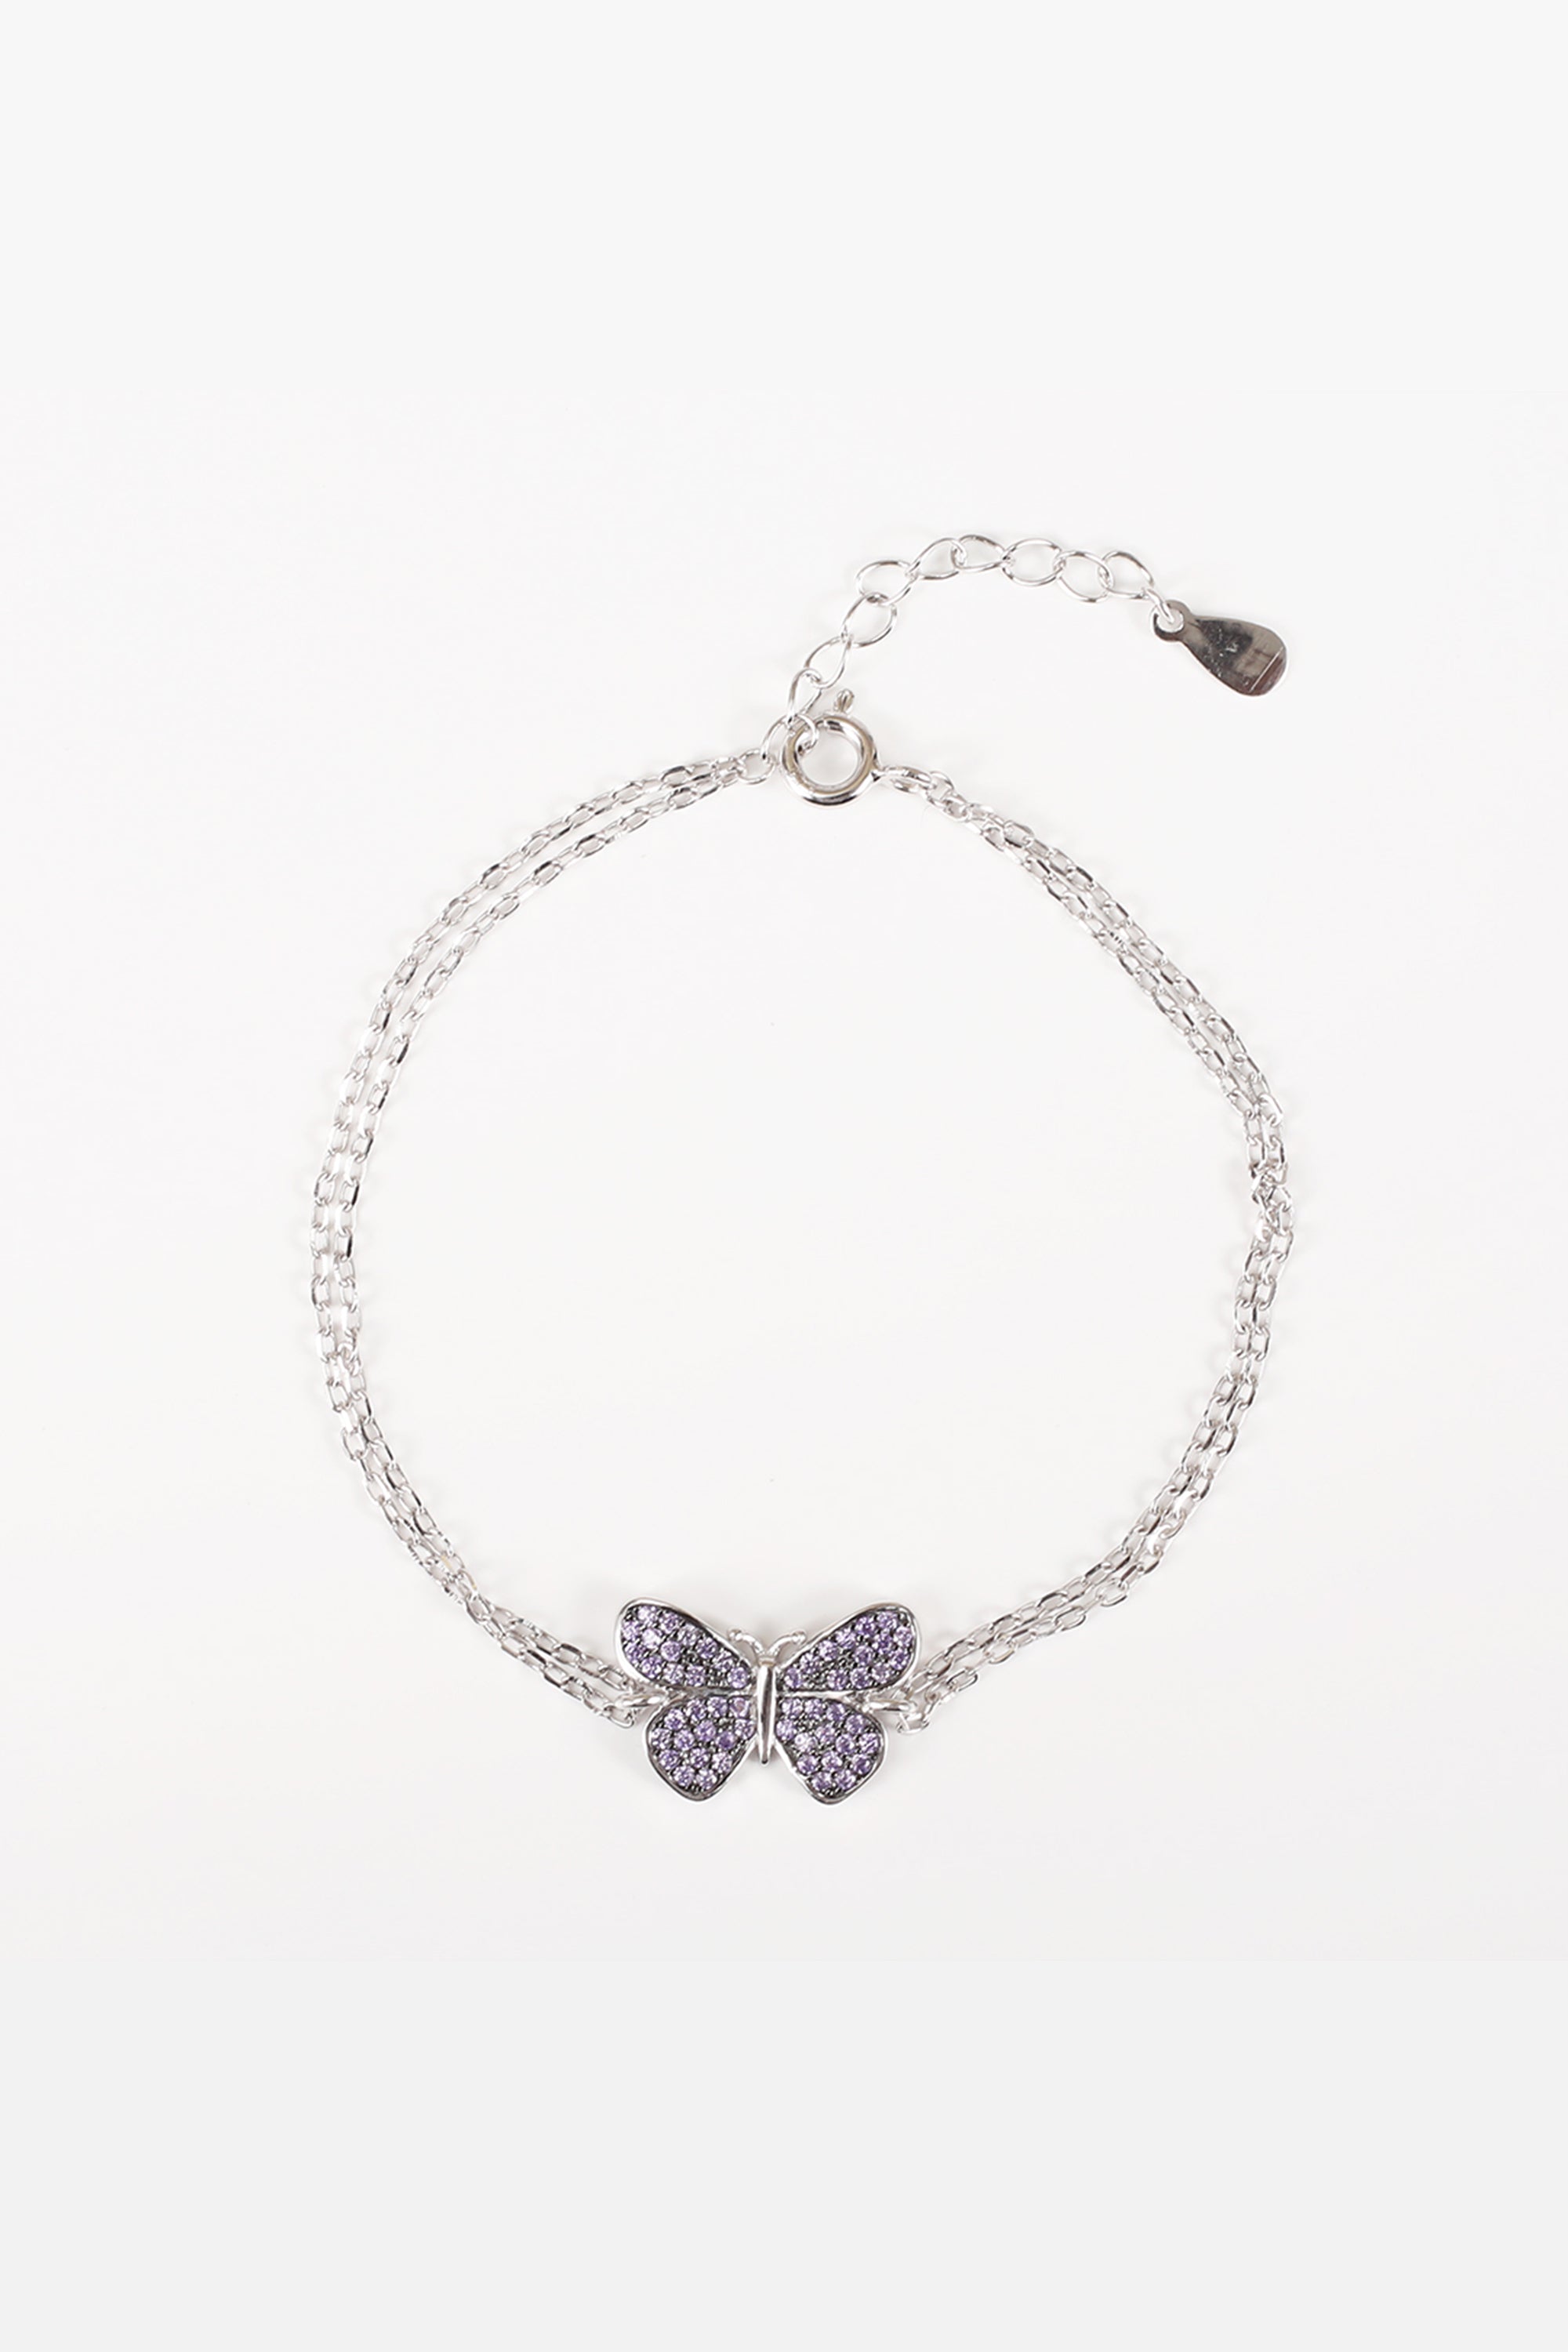 Belle- The Butterfly Bracelet